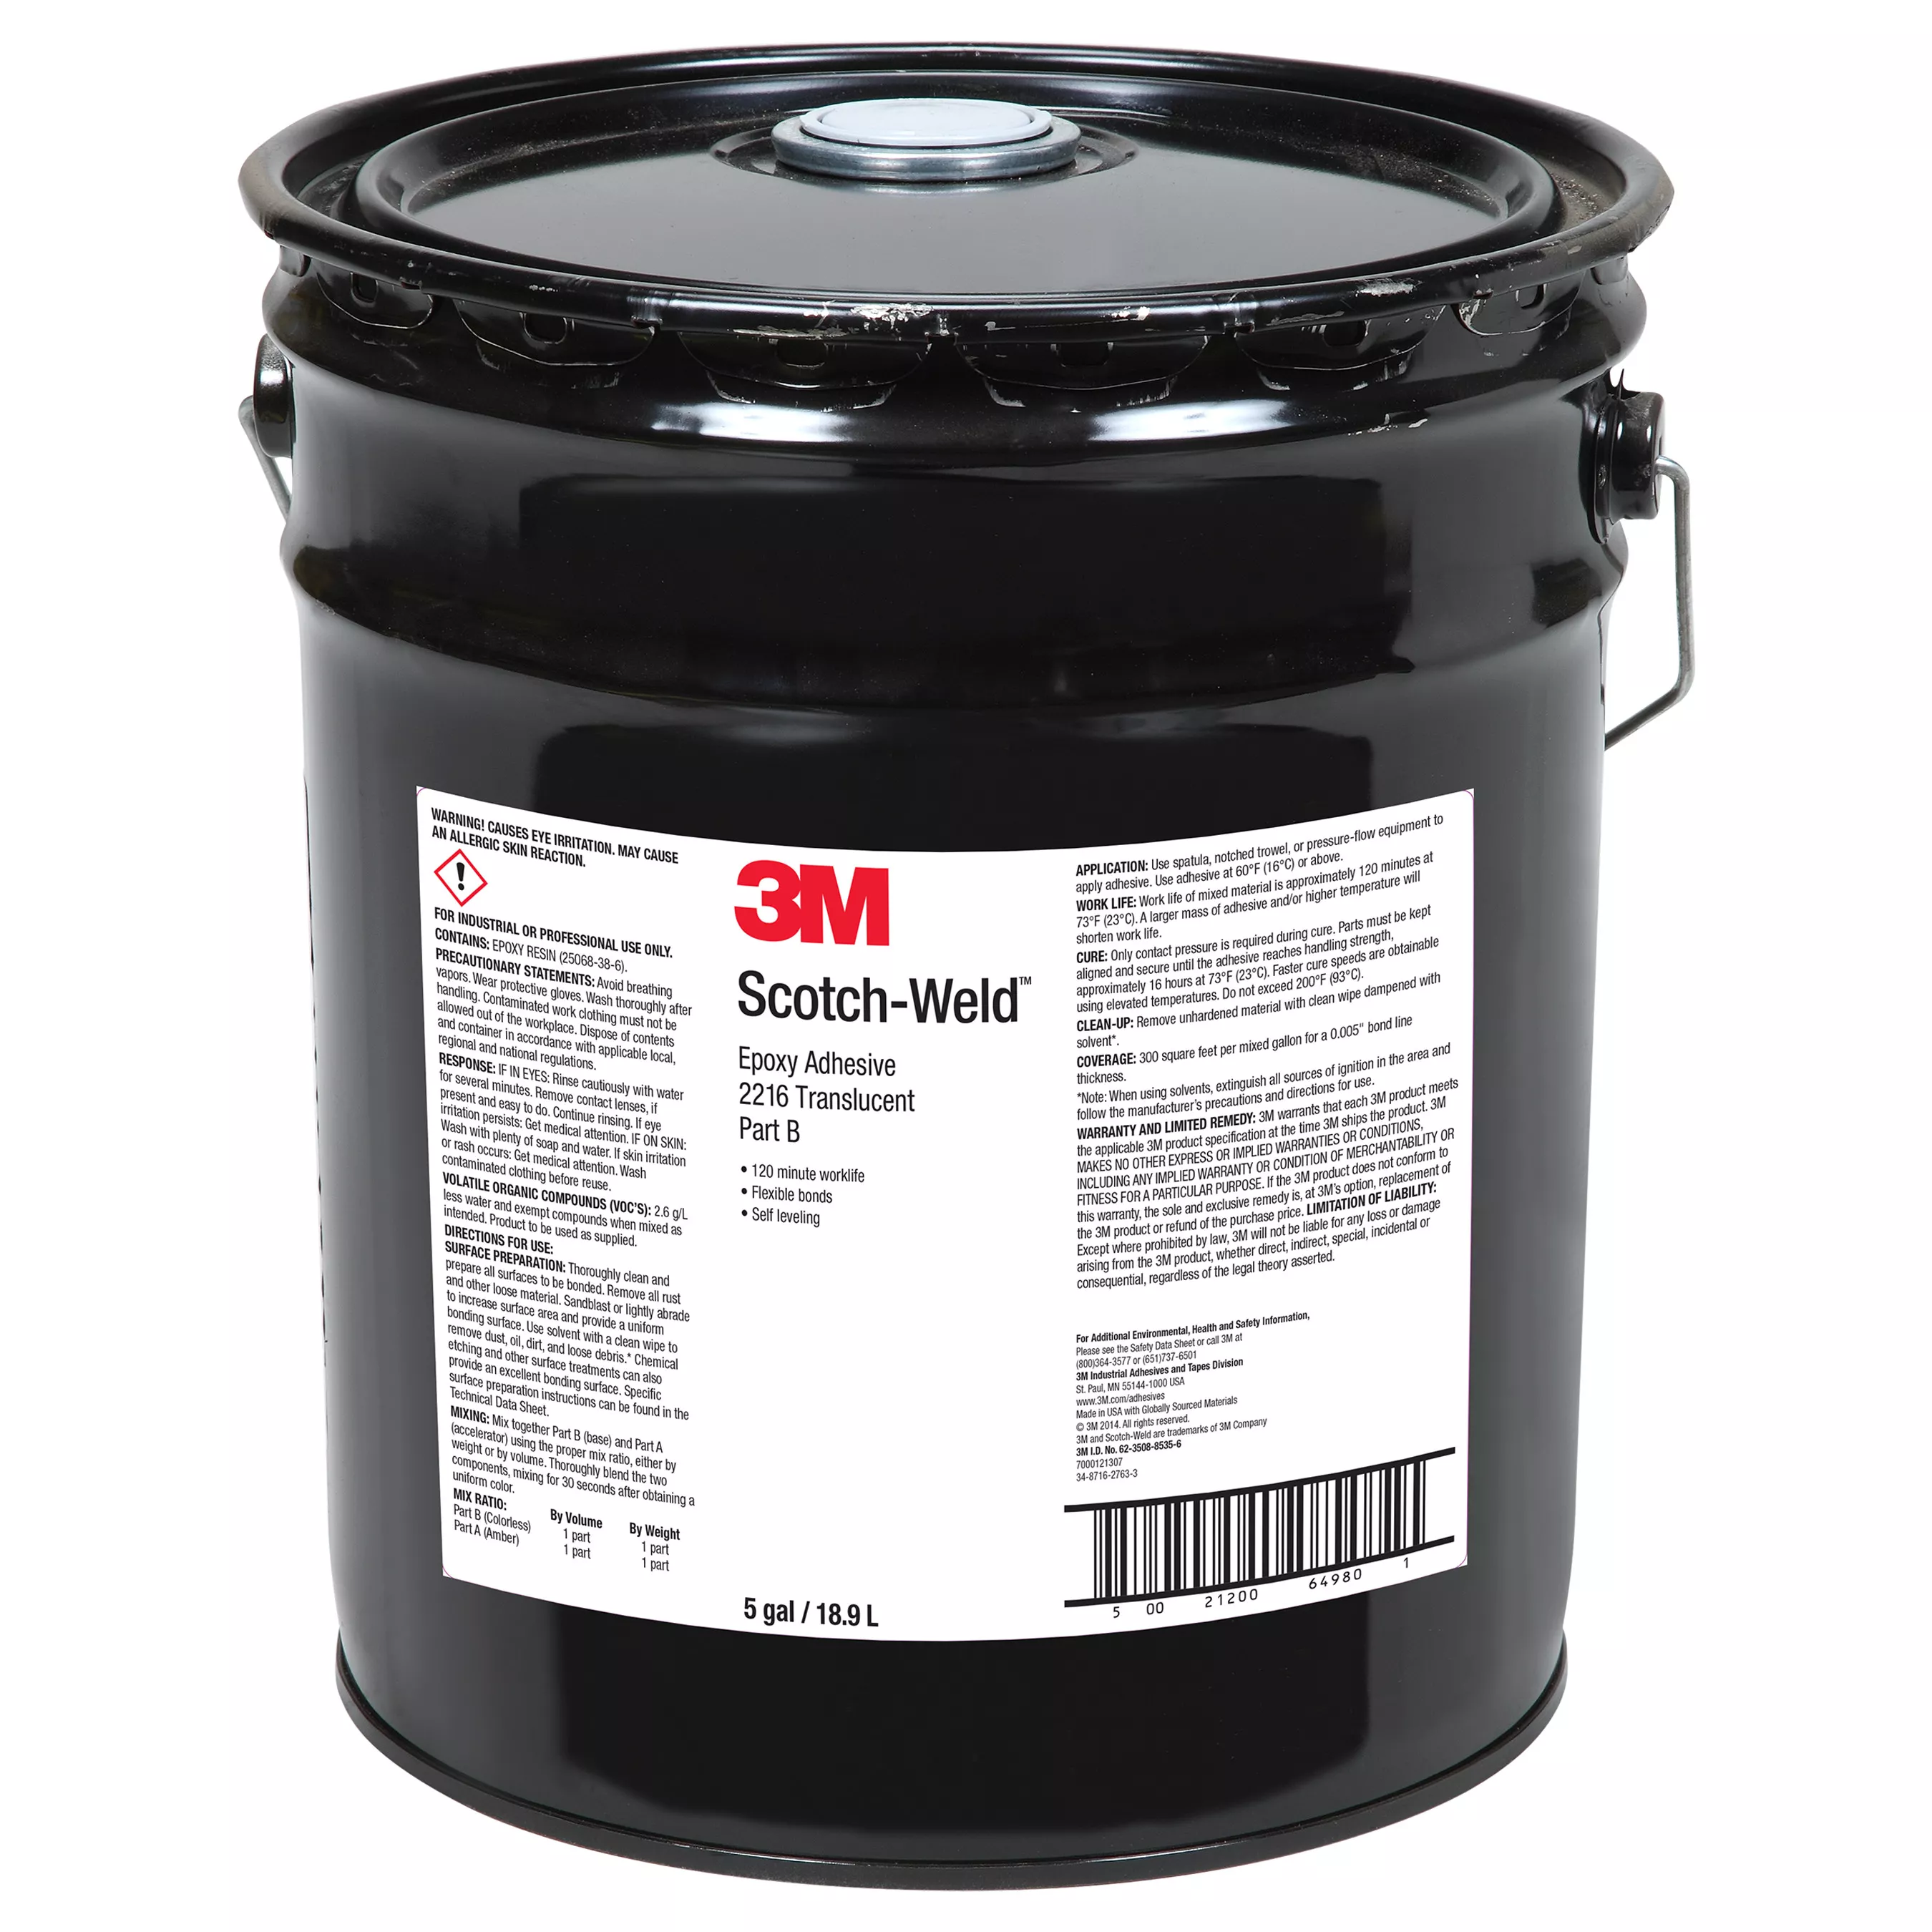 3M™ Scotch-Weld™ Epoxy Adhesive 2216, Translucent, Part B, 5 Gallon Pour
Spout (Pail), 1 Can/Drum